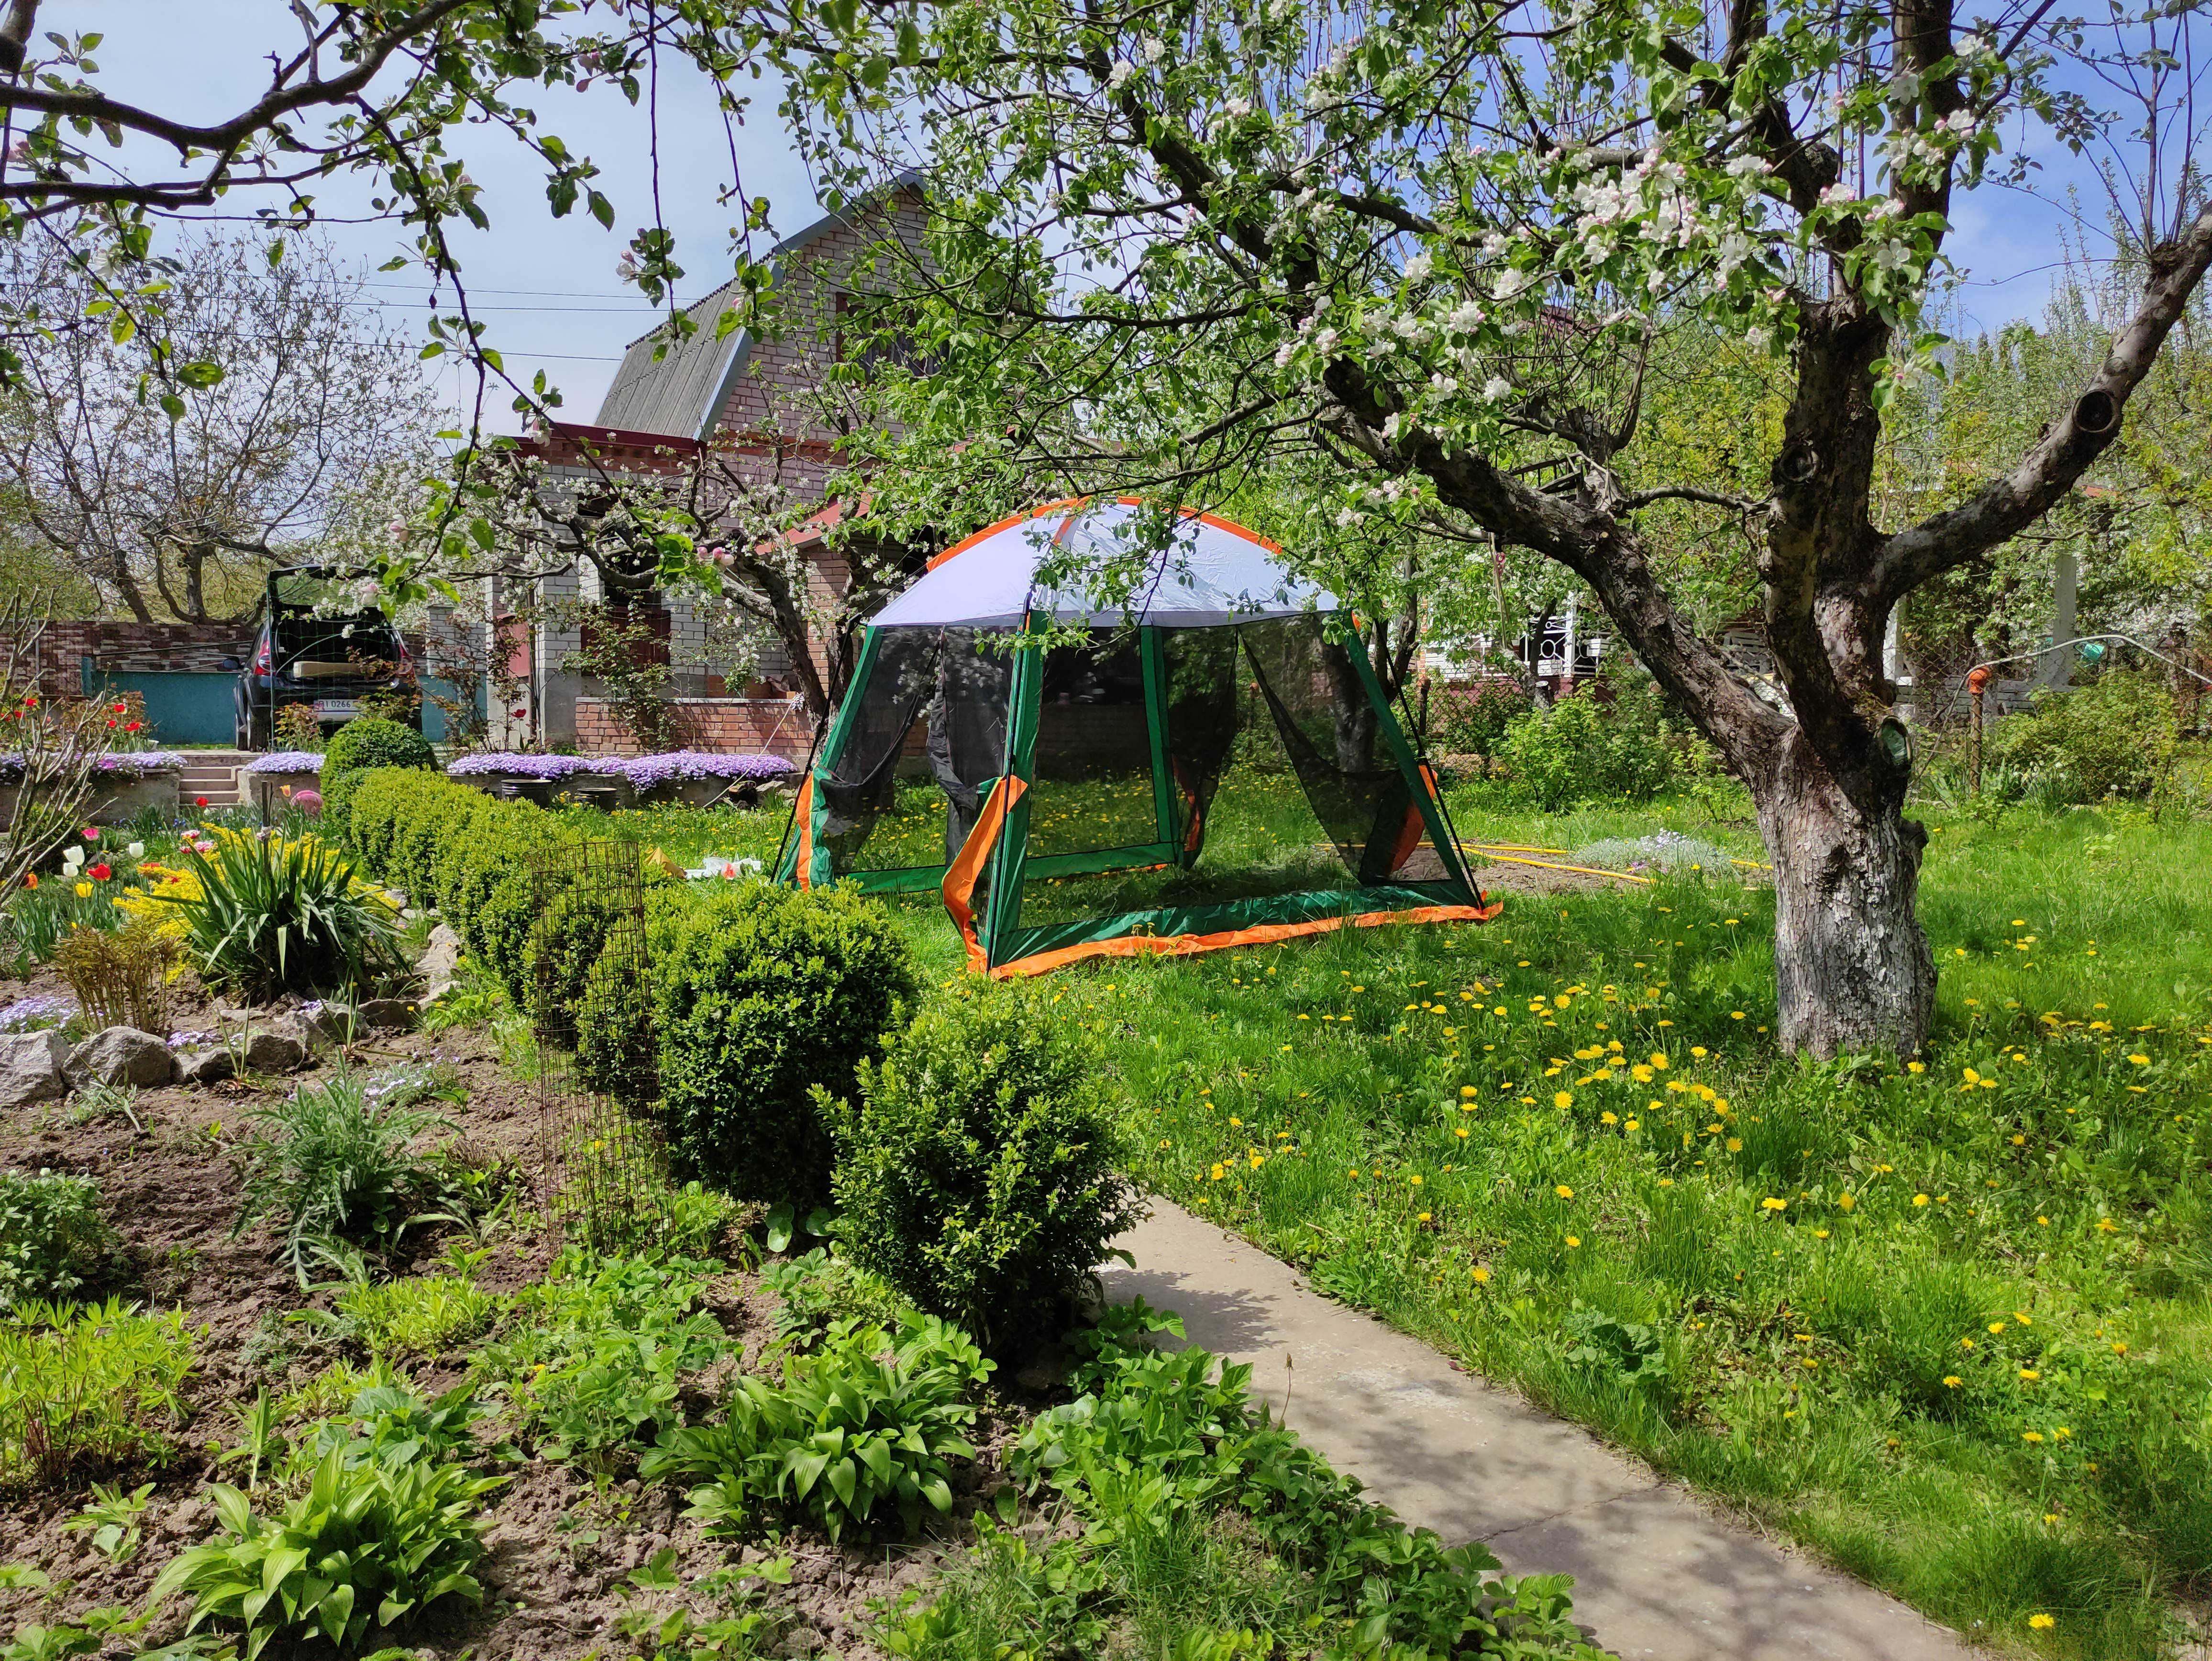 MЕГA (9 кв.м) двухслойная шатер-палатка с москитной сеткой, тент